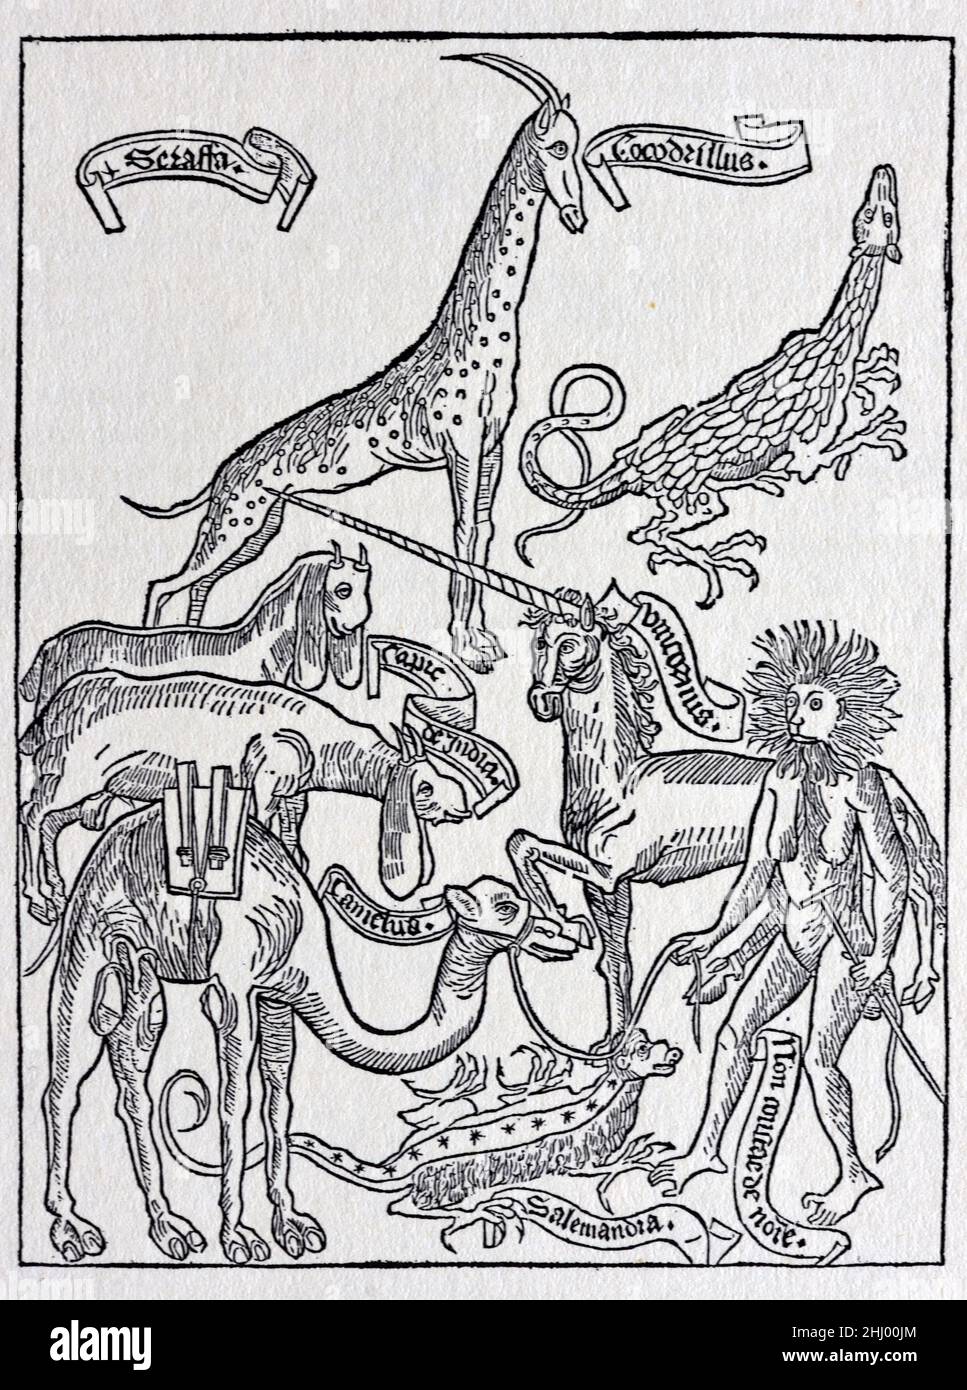 Des bêtes fantastiques, des créatures fabuleuses et des animaux mythiques, y compris une Unicorn, soi-disant témoin par Bernhard von Breidenbach (1440-1497) sur ses voyages en Terre Sainte en 1483-84.Coupe de bois publiée dans peregrinatio in Terrum Sanctam (1486).Imprimé, gravure ou illustration de bois d'époque Banque D'Images